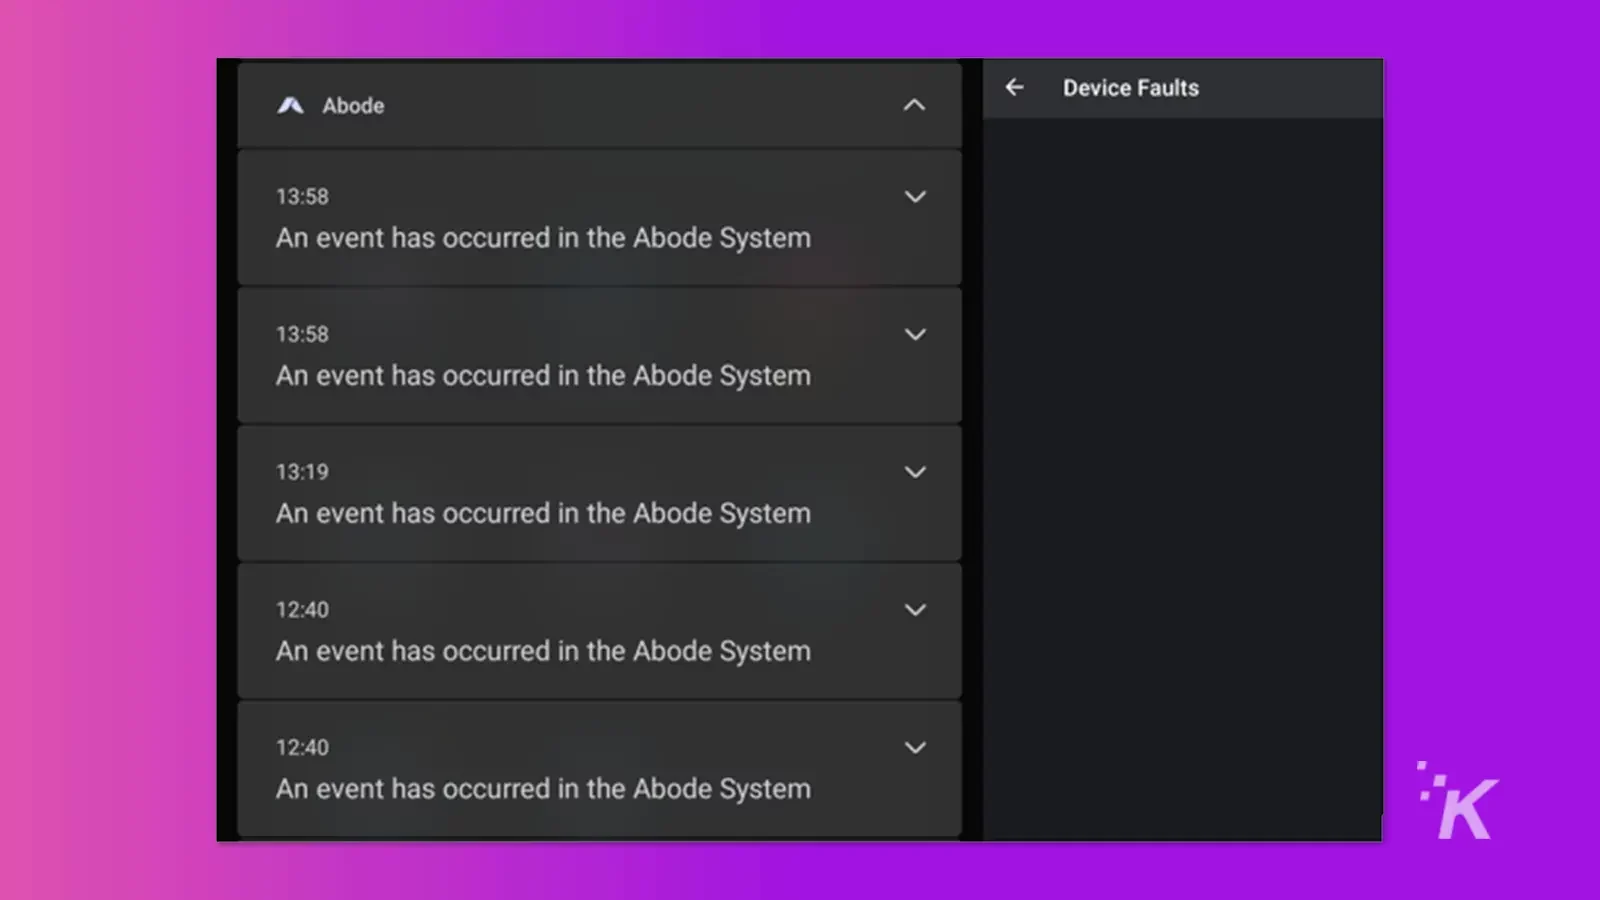 Aplikasi bel pintu Adobe menunjukkan kesalahan